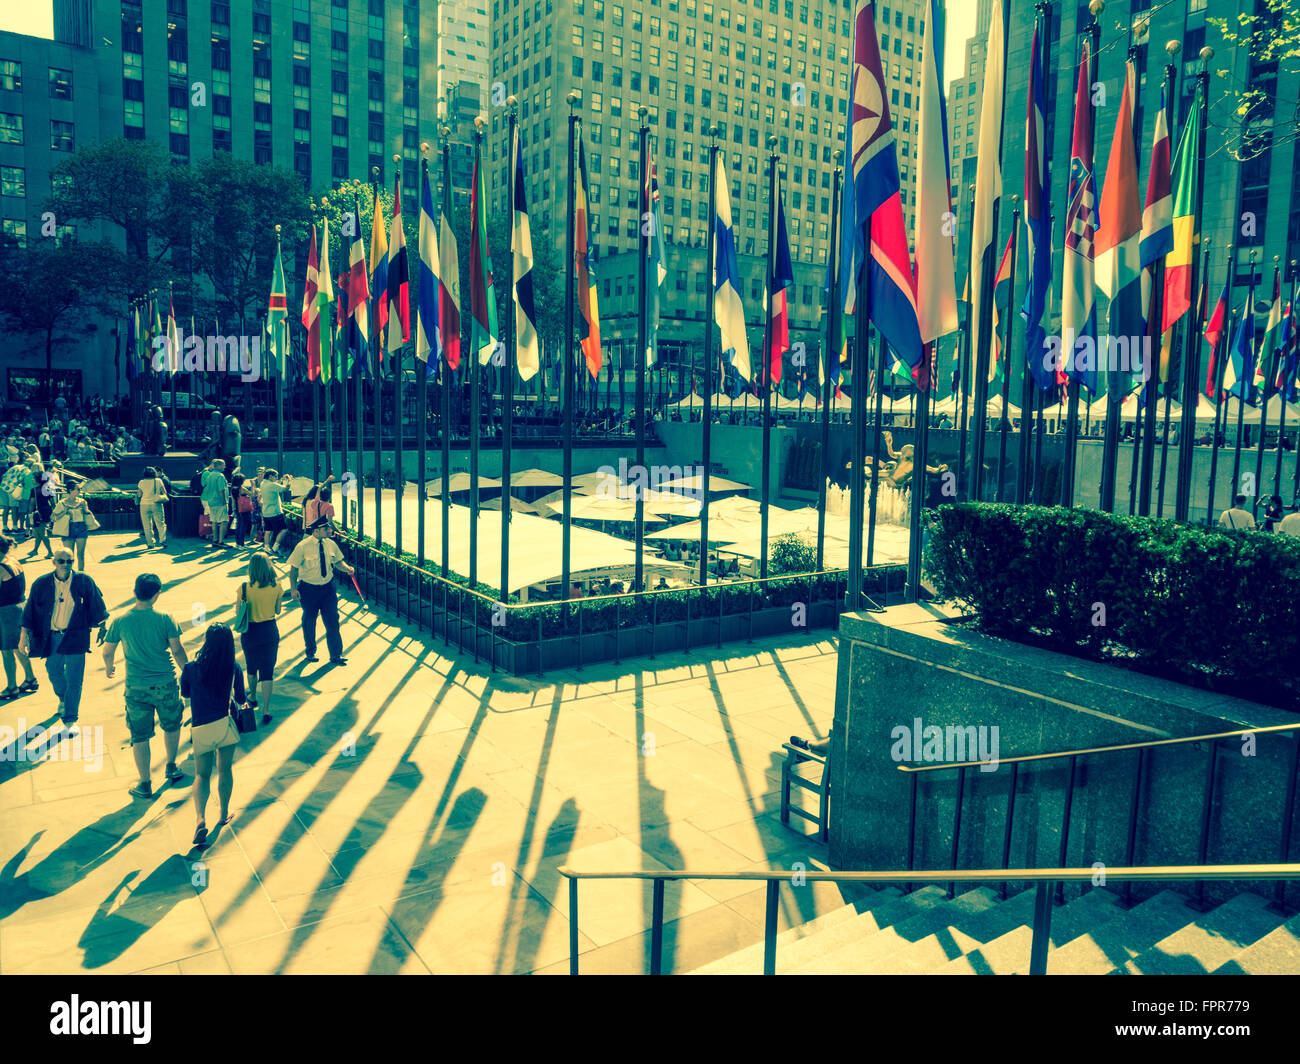 Rockefeller Plaza - The Concourse - part of the Rockefeller Center, New York City, USA. Stock Photo